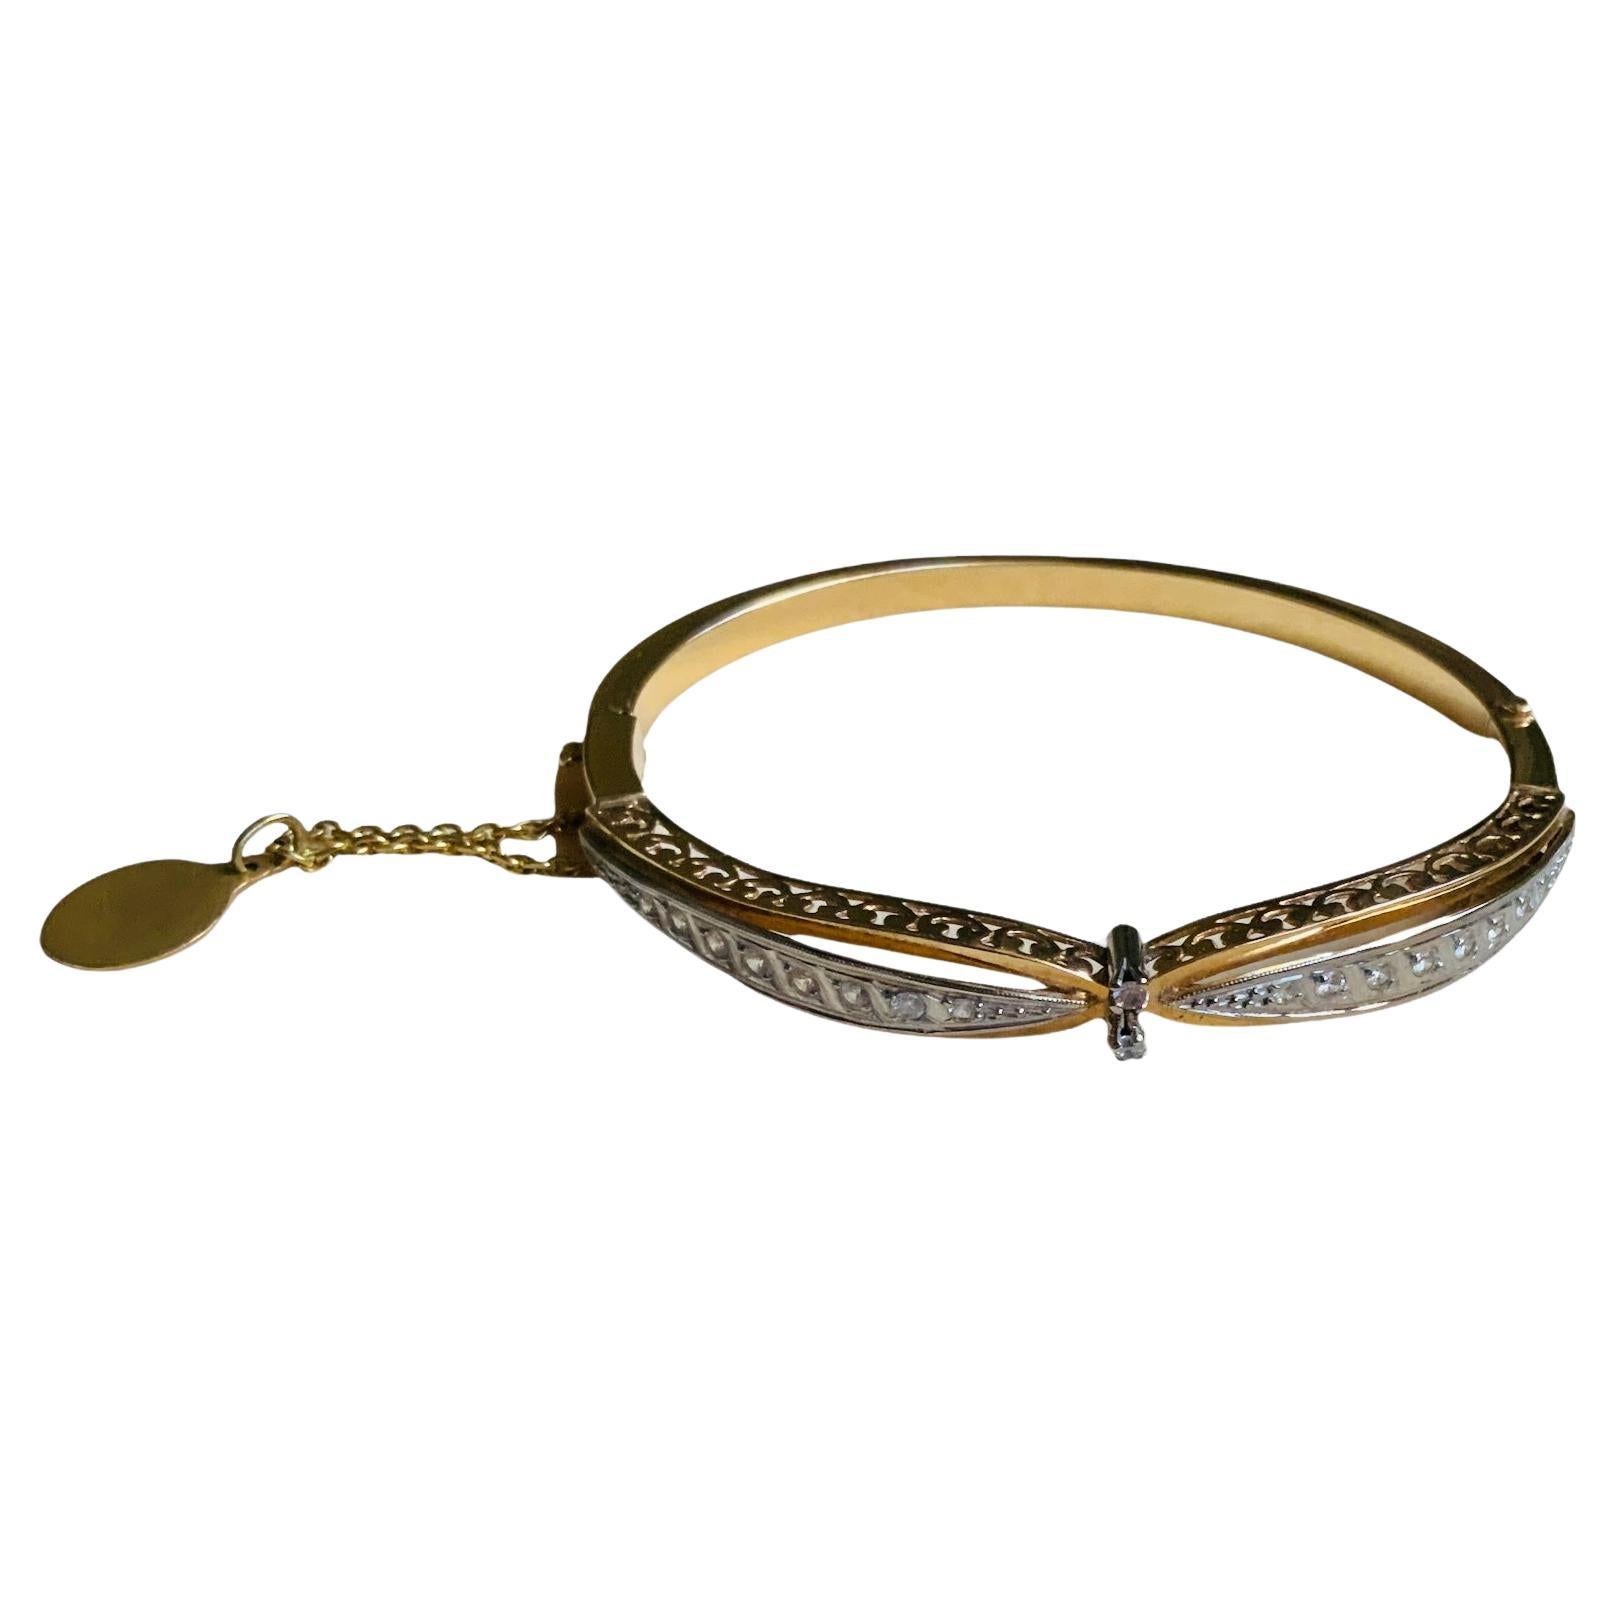 Il s'agit d'un bracelet à charnière en or jaune et blanc 18K et quartz de forme brillante. Ce délicat bracelet en forme d'arc contient 18 quartz de forme brillante montés chacun en serti clos en or 18K. Les deux côtés de l'arc sont ornés d'une